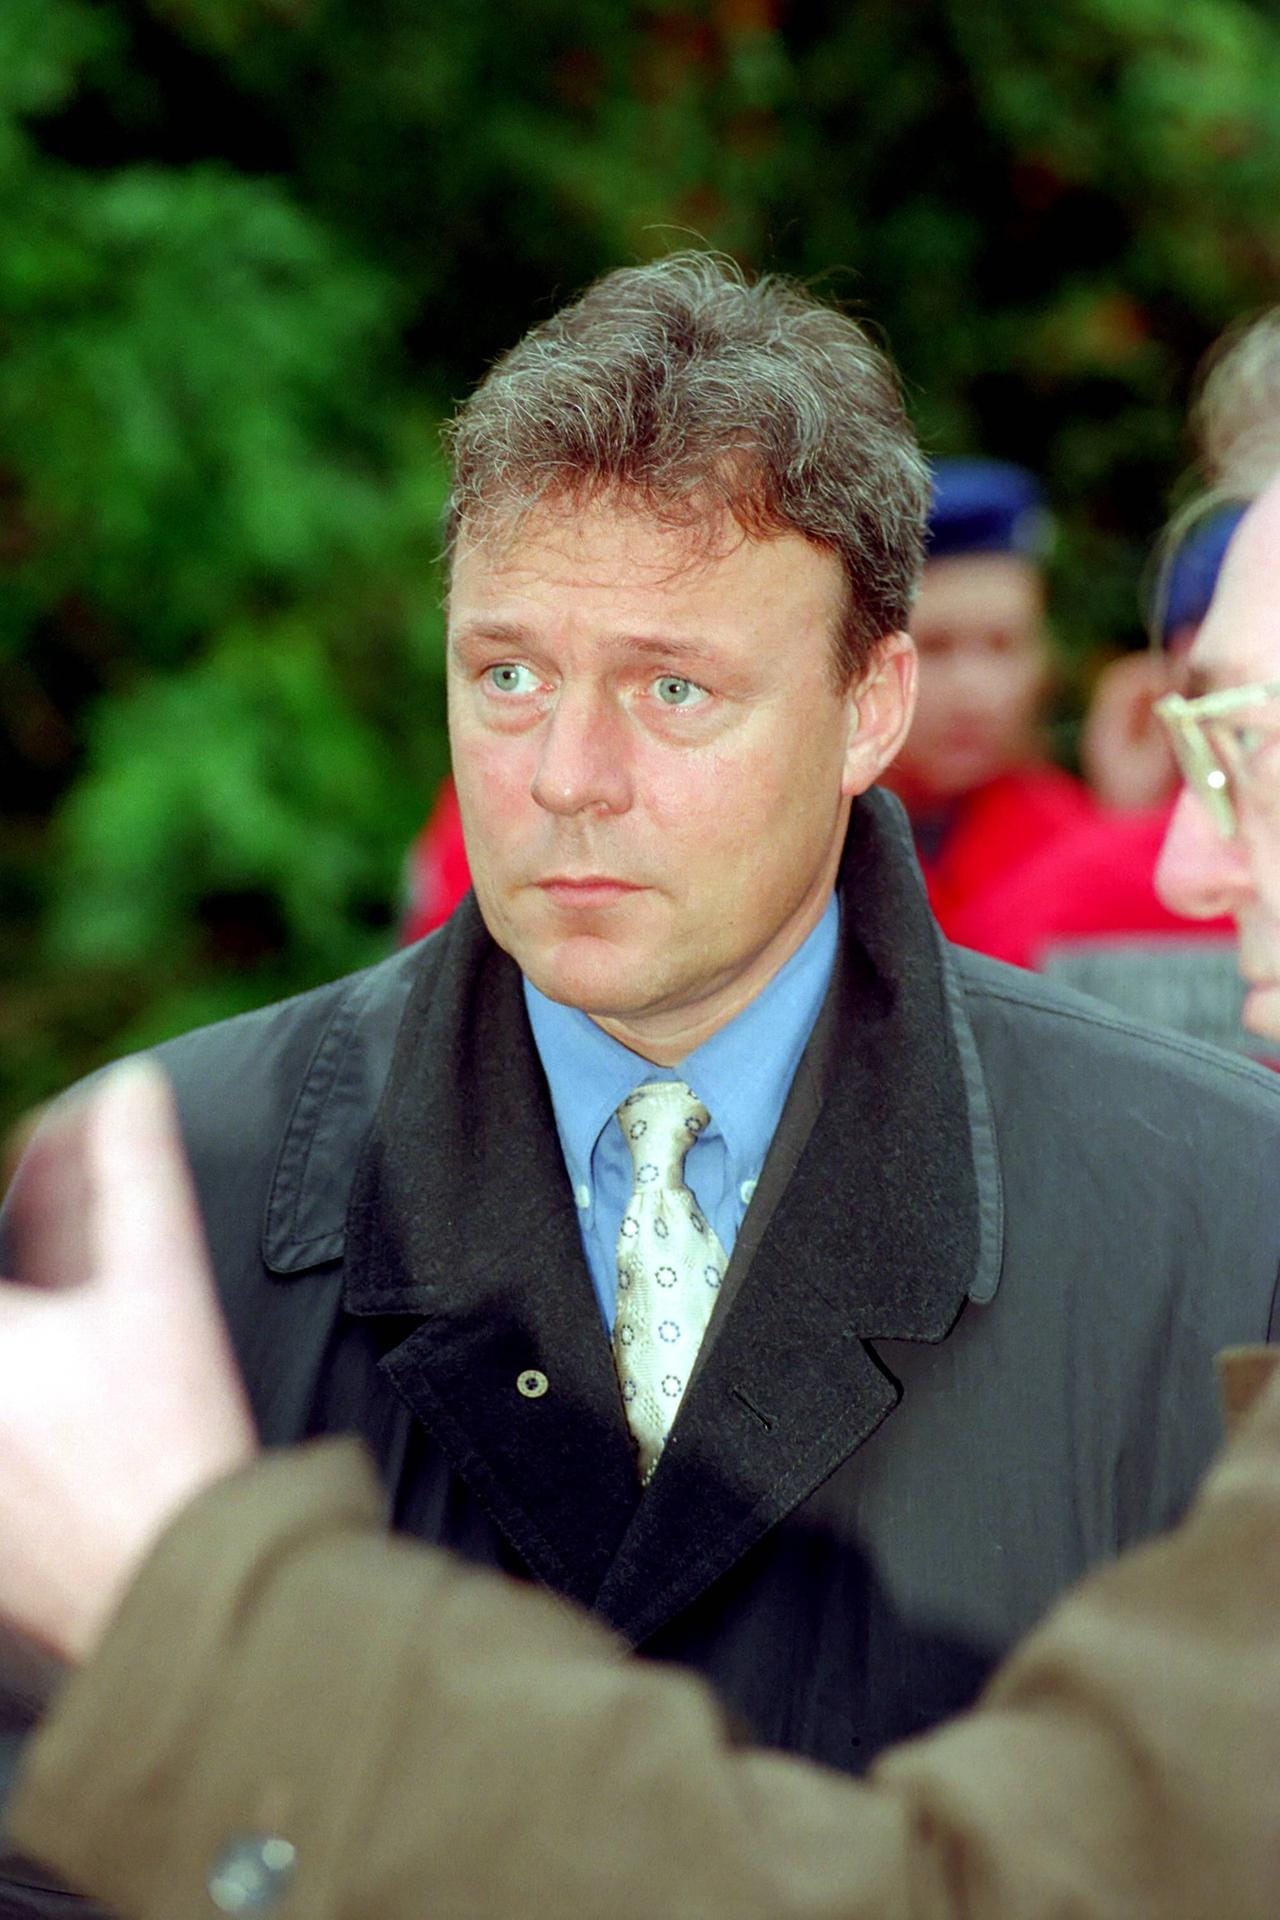 Thomas Oppermann 1998: Von März 1998 bis März 2003 war er Minister für Wissenschaft und Kultur in Niedersachsen.